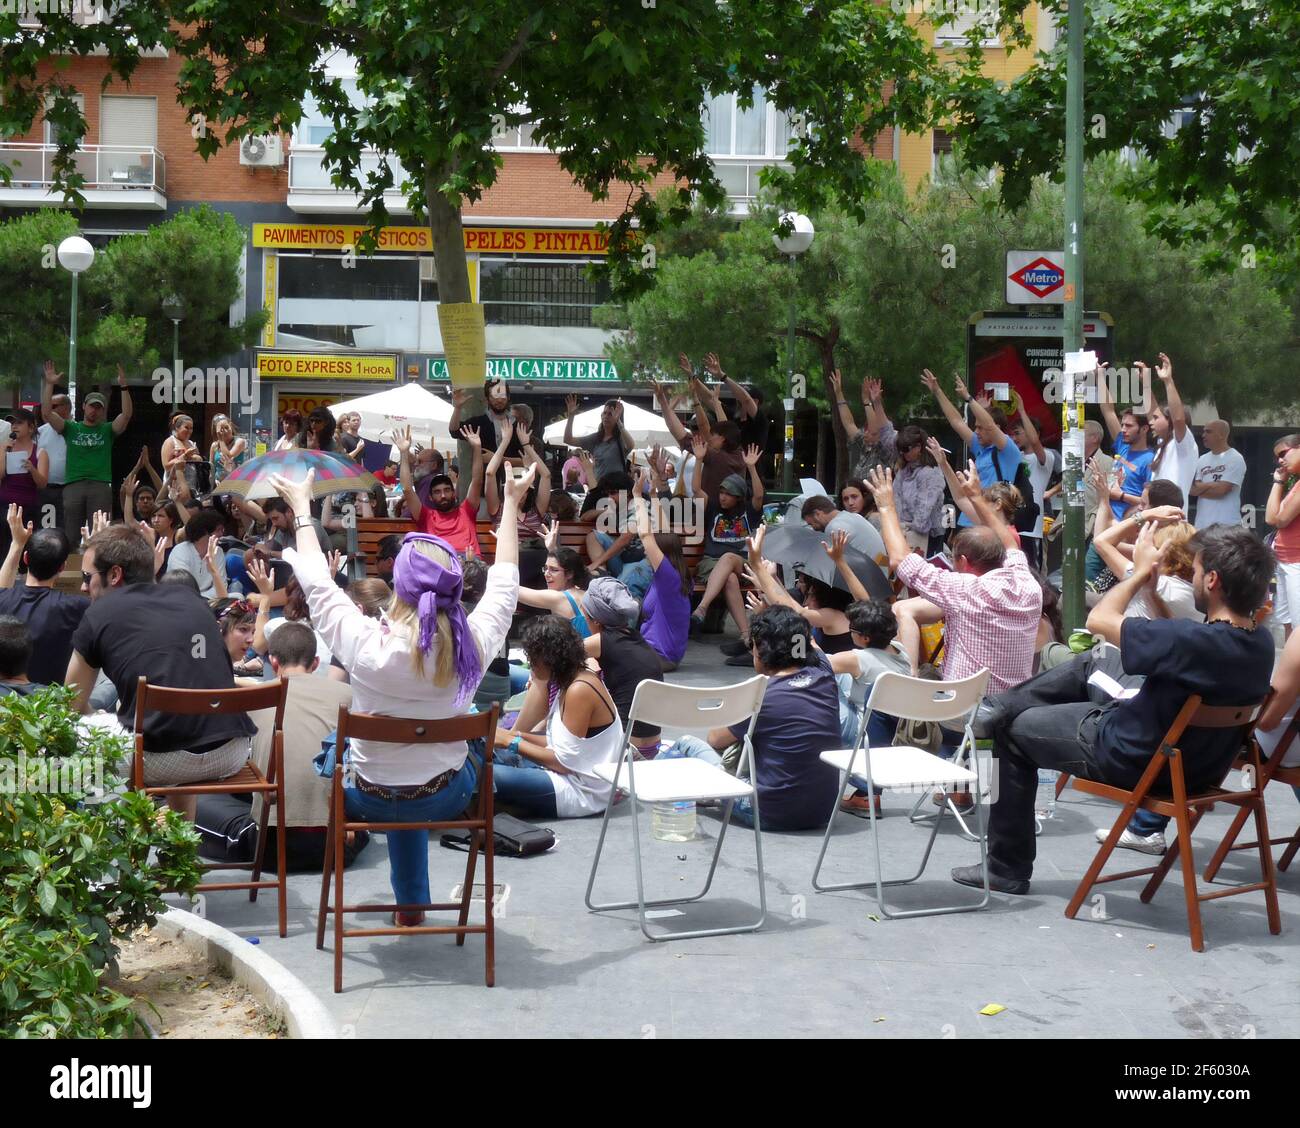 Madrid, Spanien; Juni 4 2011. Menschen, die bei einer Versammlung im Stadtteil Prosperidad in Madrid lautlos applaudieren. 15-M-Bewegung. Aufgenommen Stockfoto